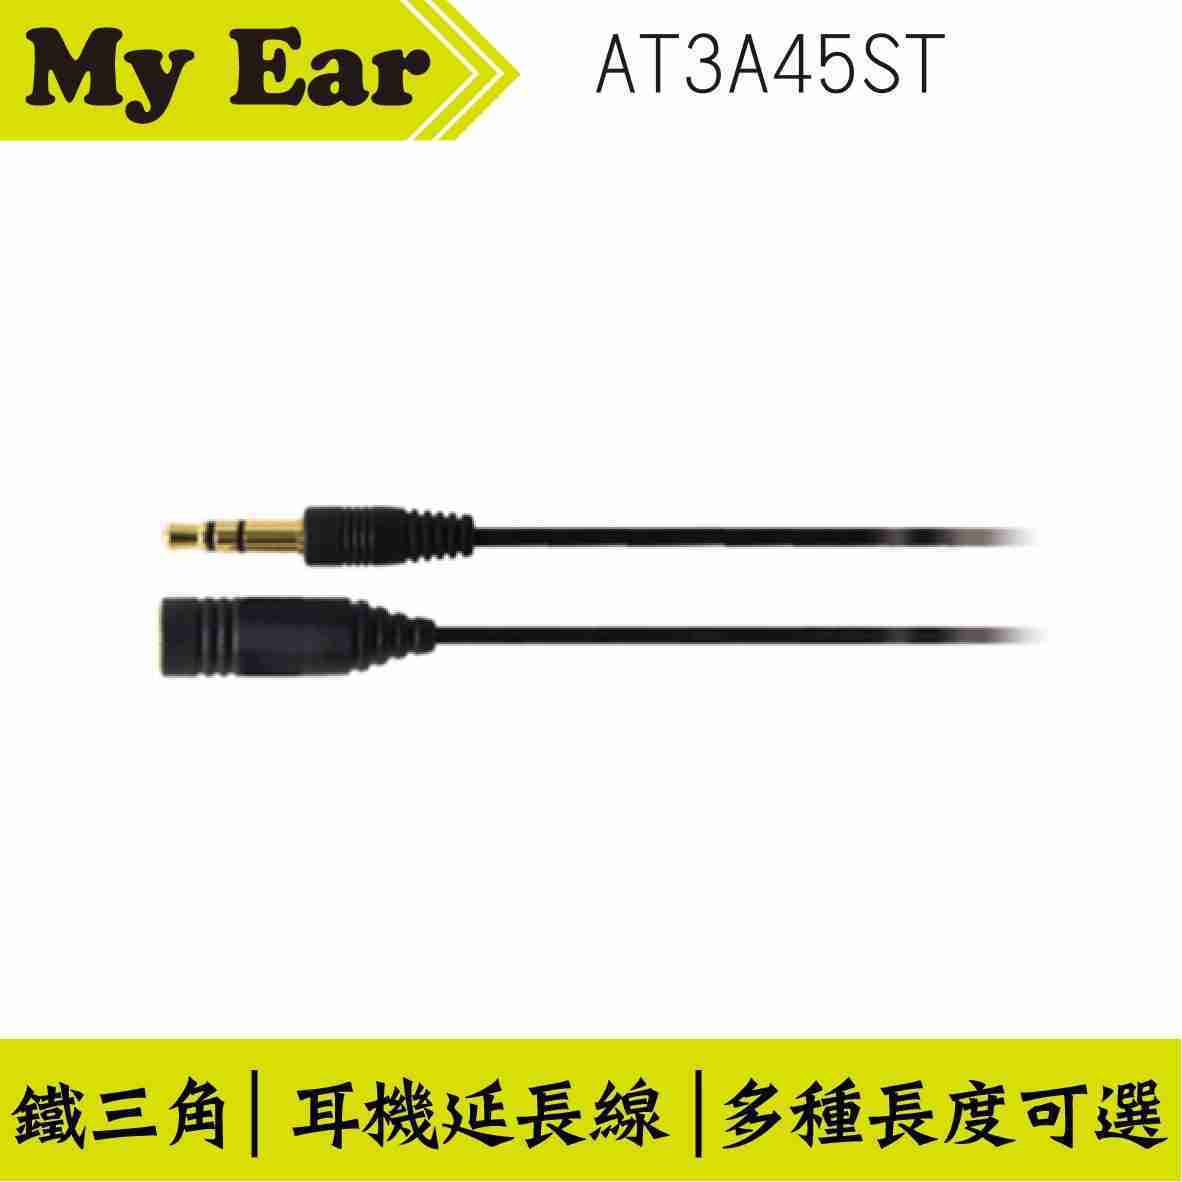 鐵三角 AT3A45ST 直頭 耳機延長線 0.5M | My Ear 耳機專門店